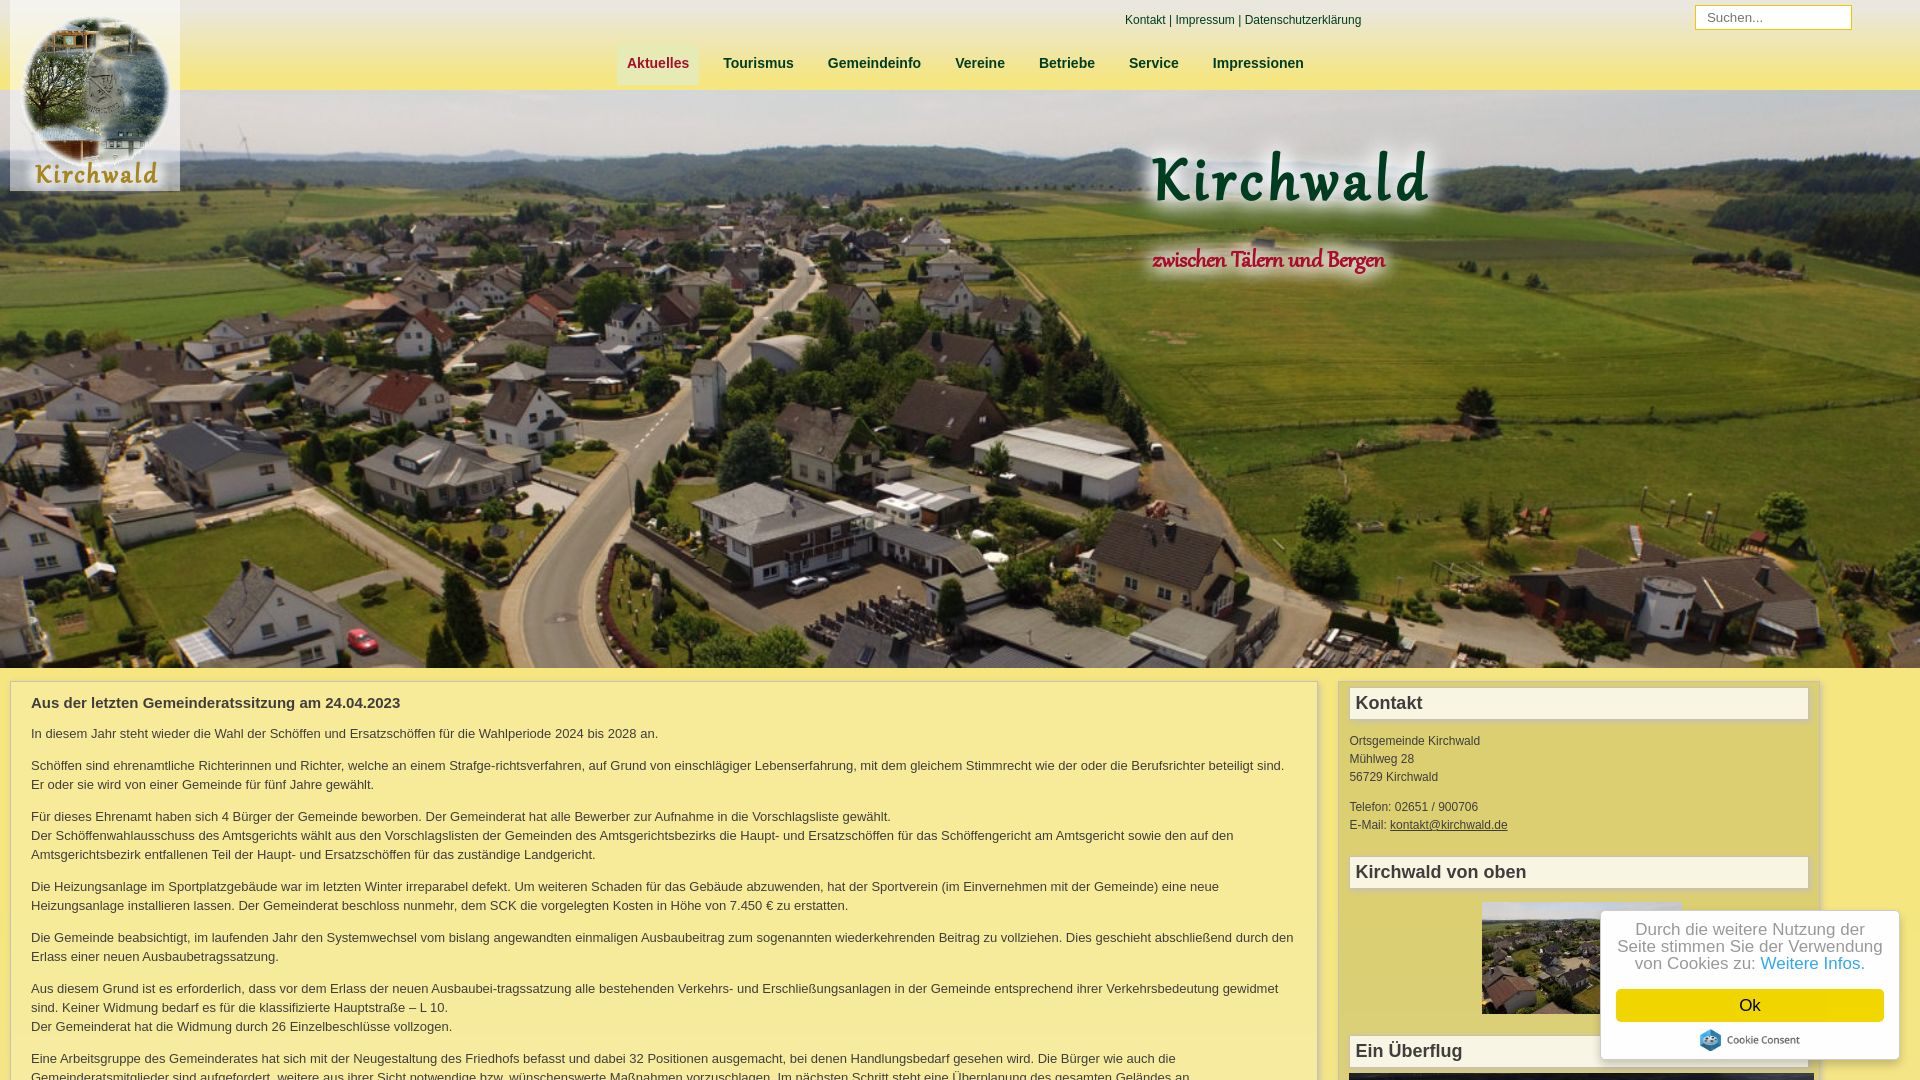 État du site web kirchwald.de est   EN LIGNE